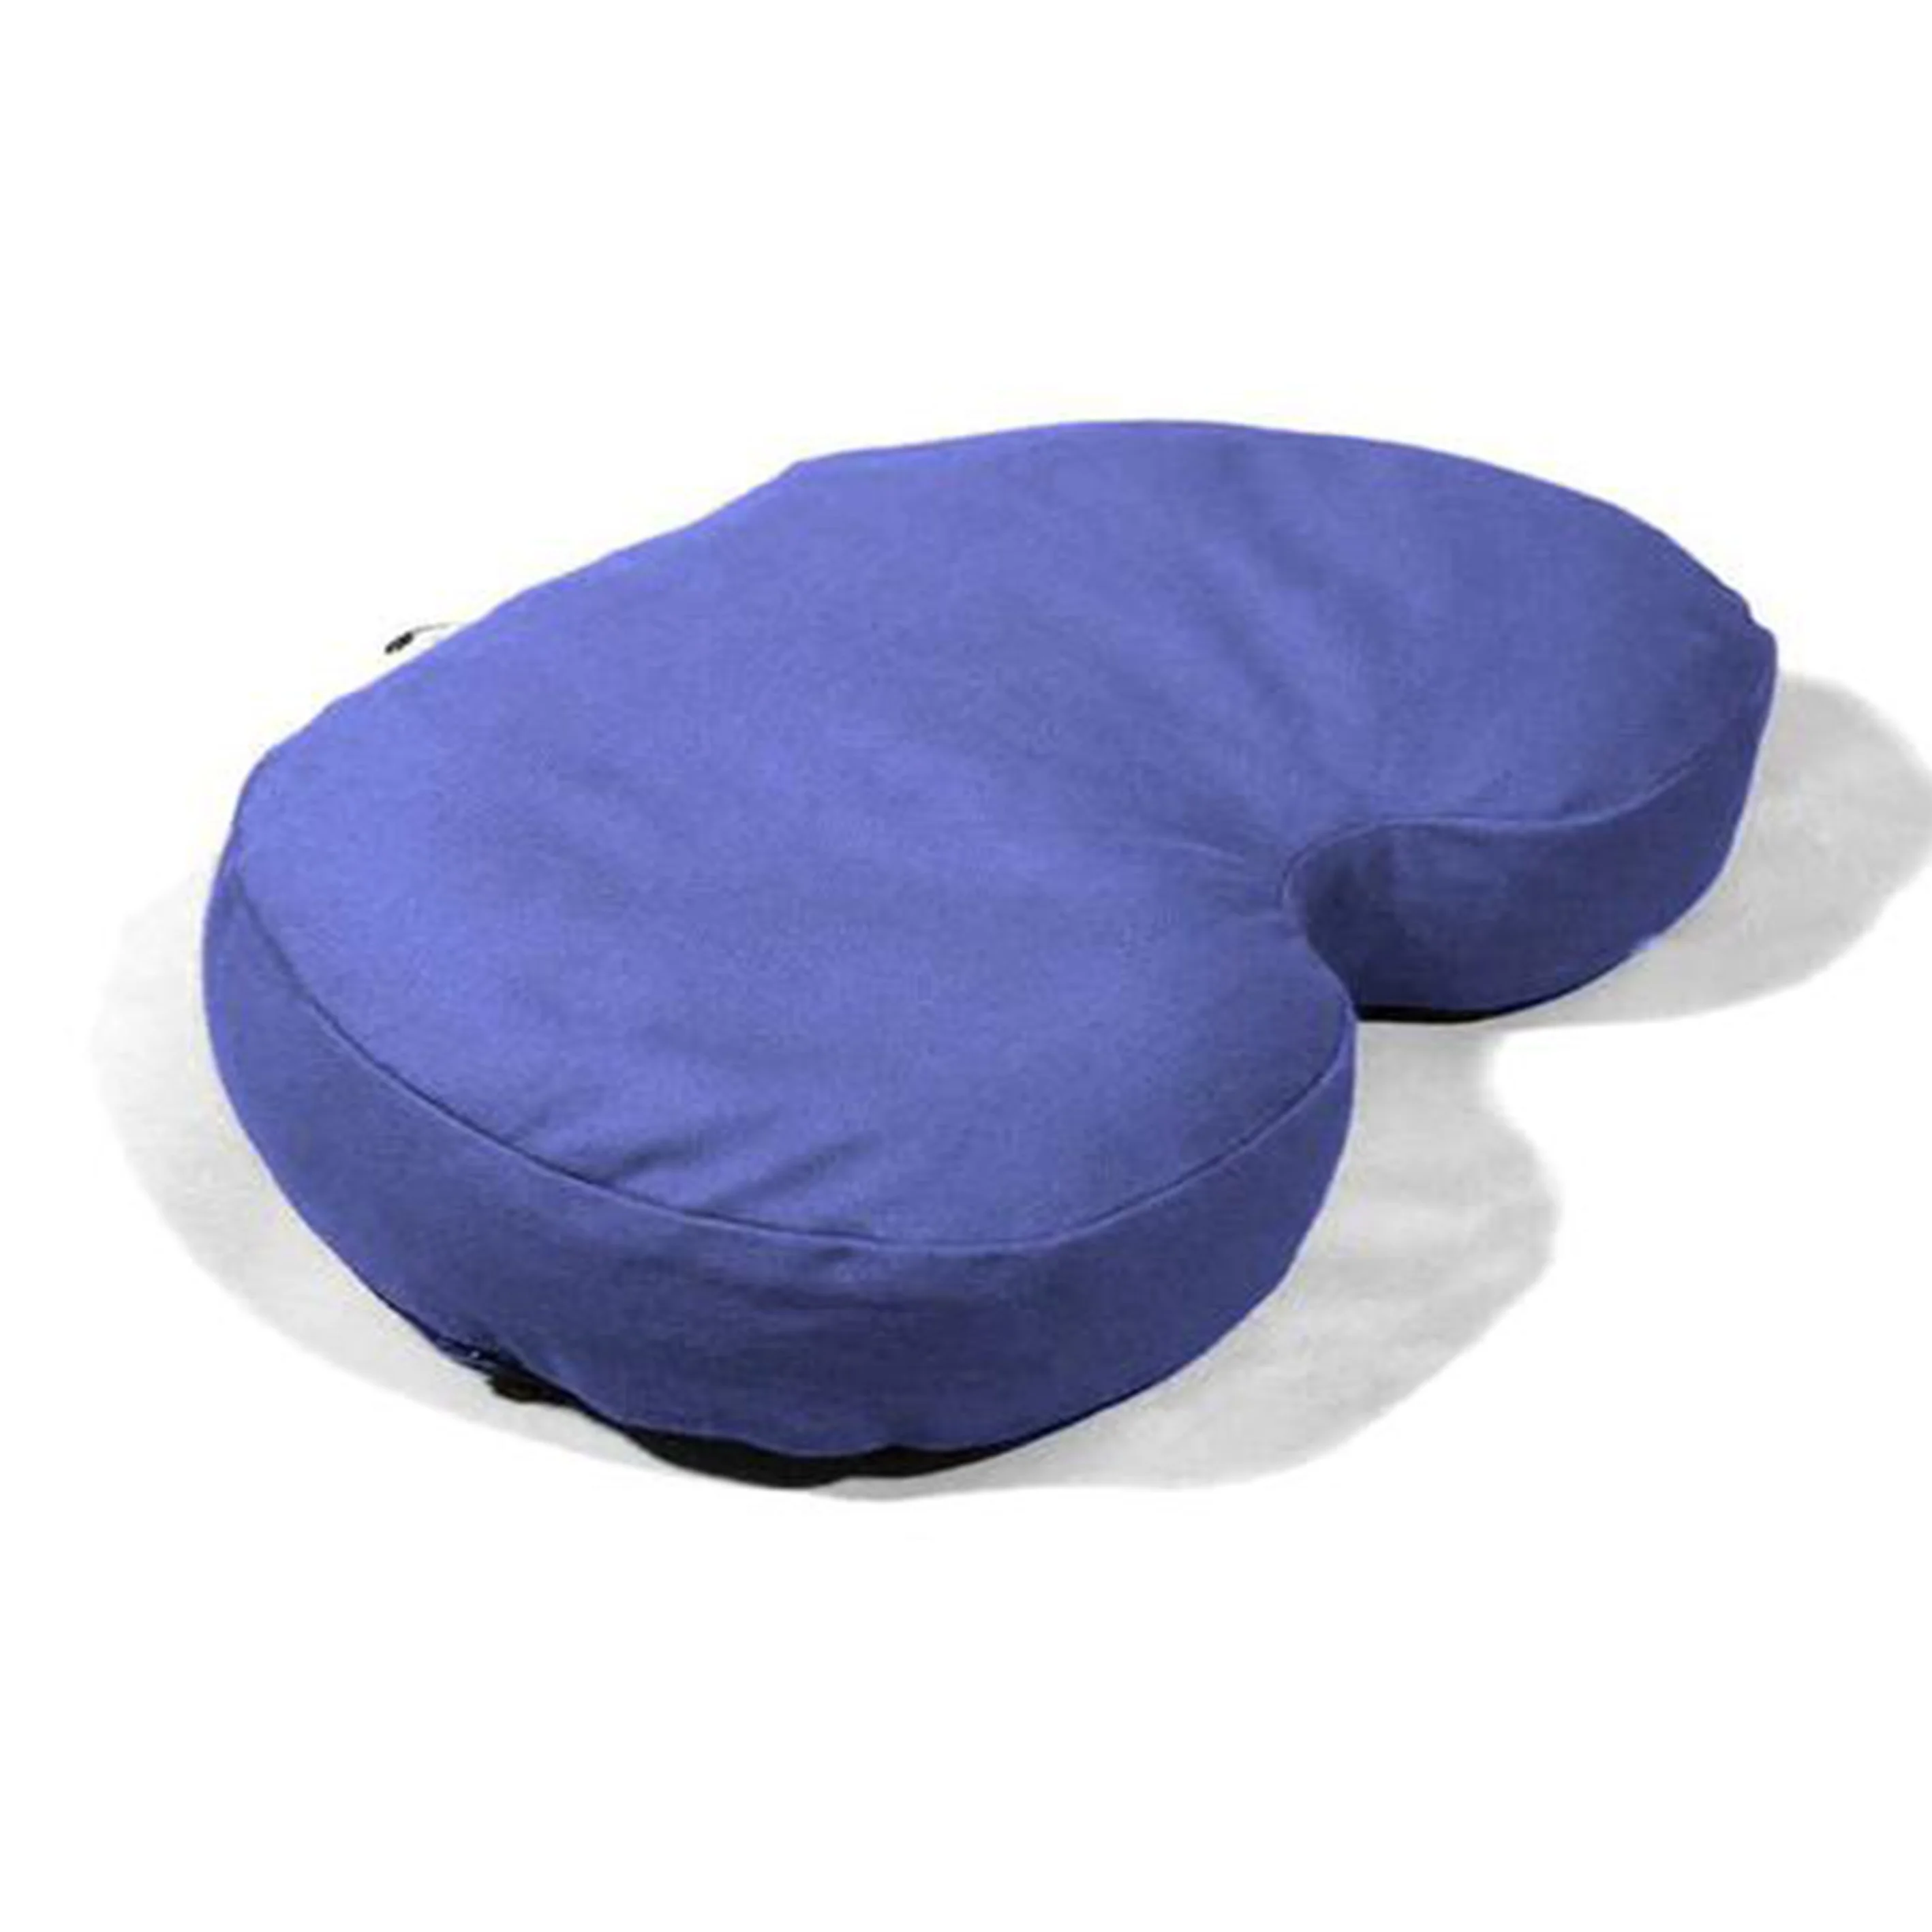 booster pillow